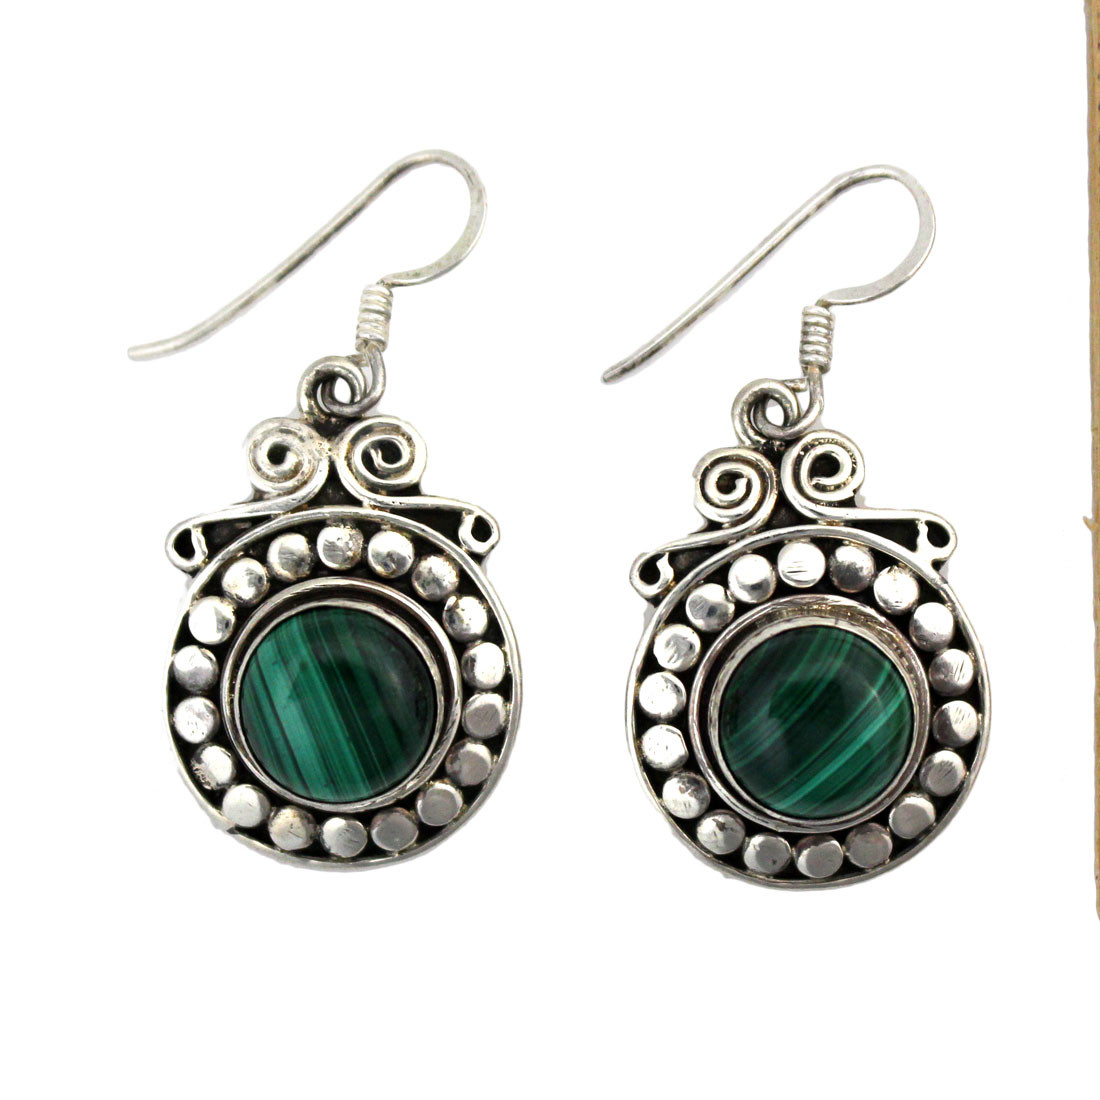 Green Malachite earrings. 